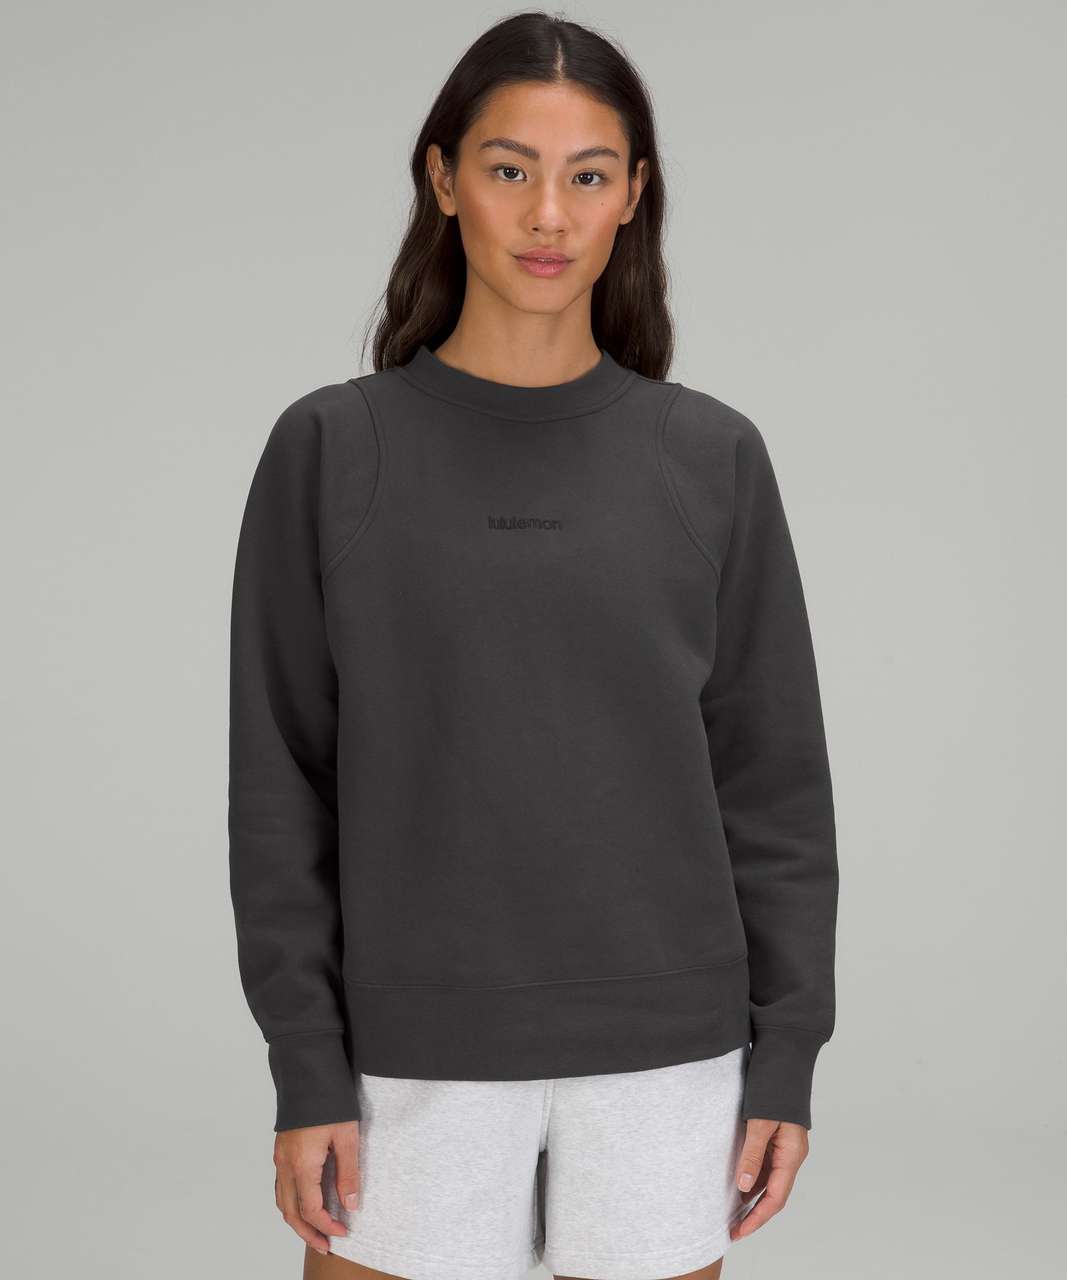 lululemon Crewneck sweatshirt with side zippers Size 12